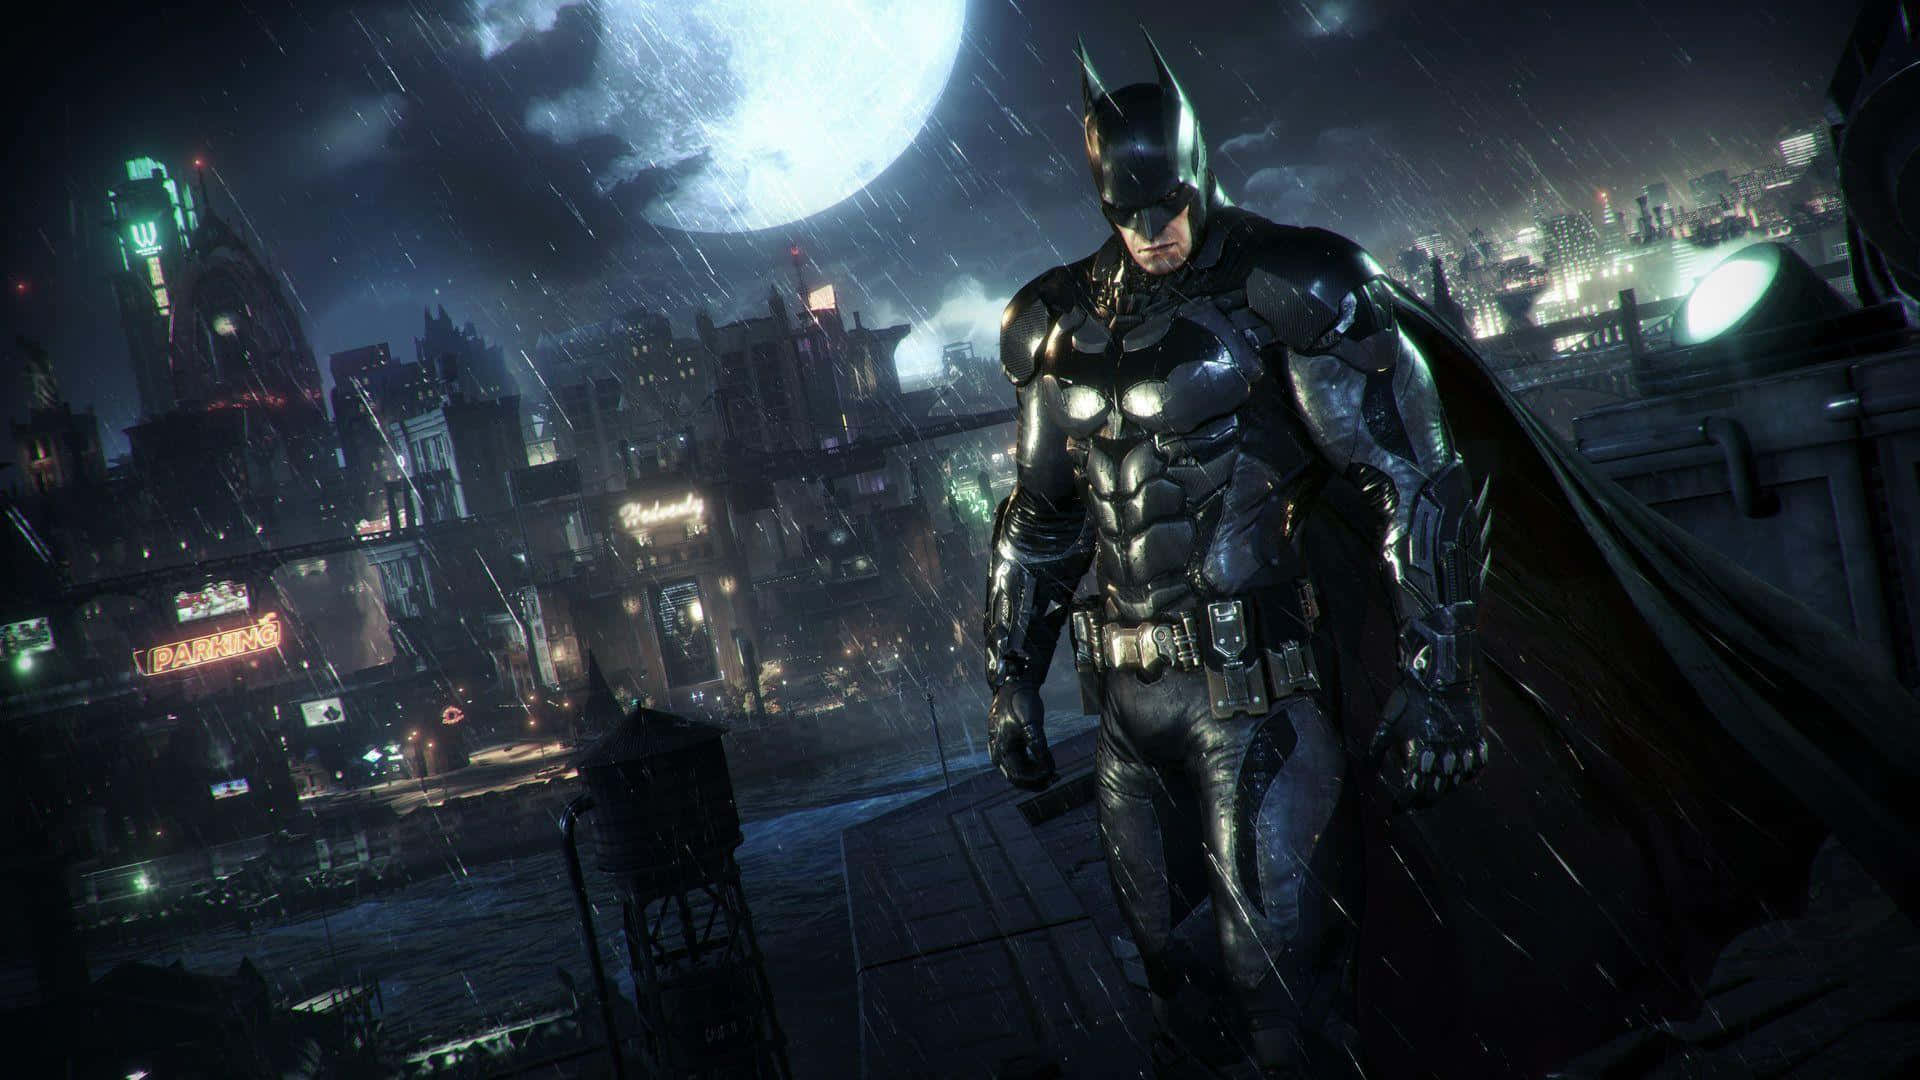 Batman stiger op fra skyggerne i Gotham City. Wallpaper